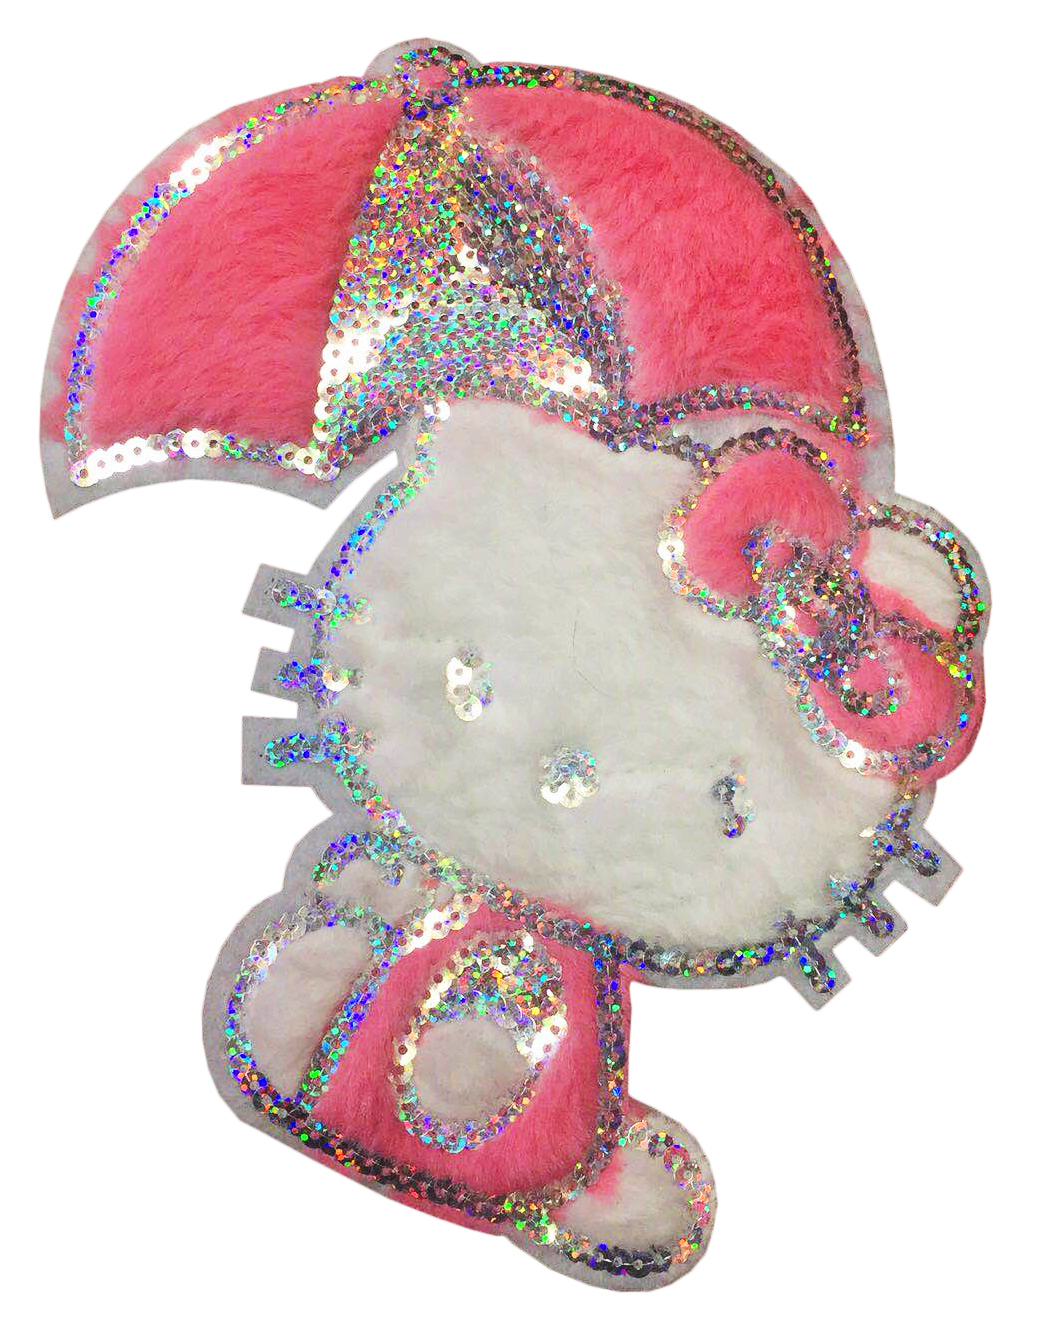 Аппликация пришивная пайетки KITTI, зонт 22,5*18см белый и розовый мех, хамелеон пайетки, шт. Аппликации Пришивные Шерсть, Кружево